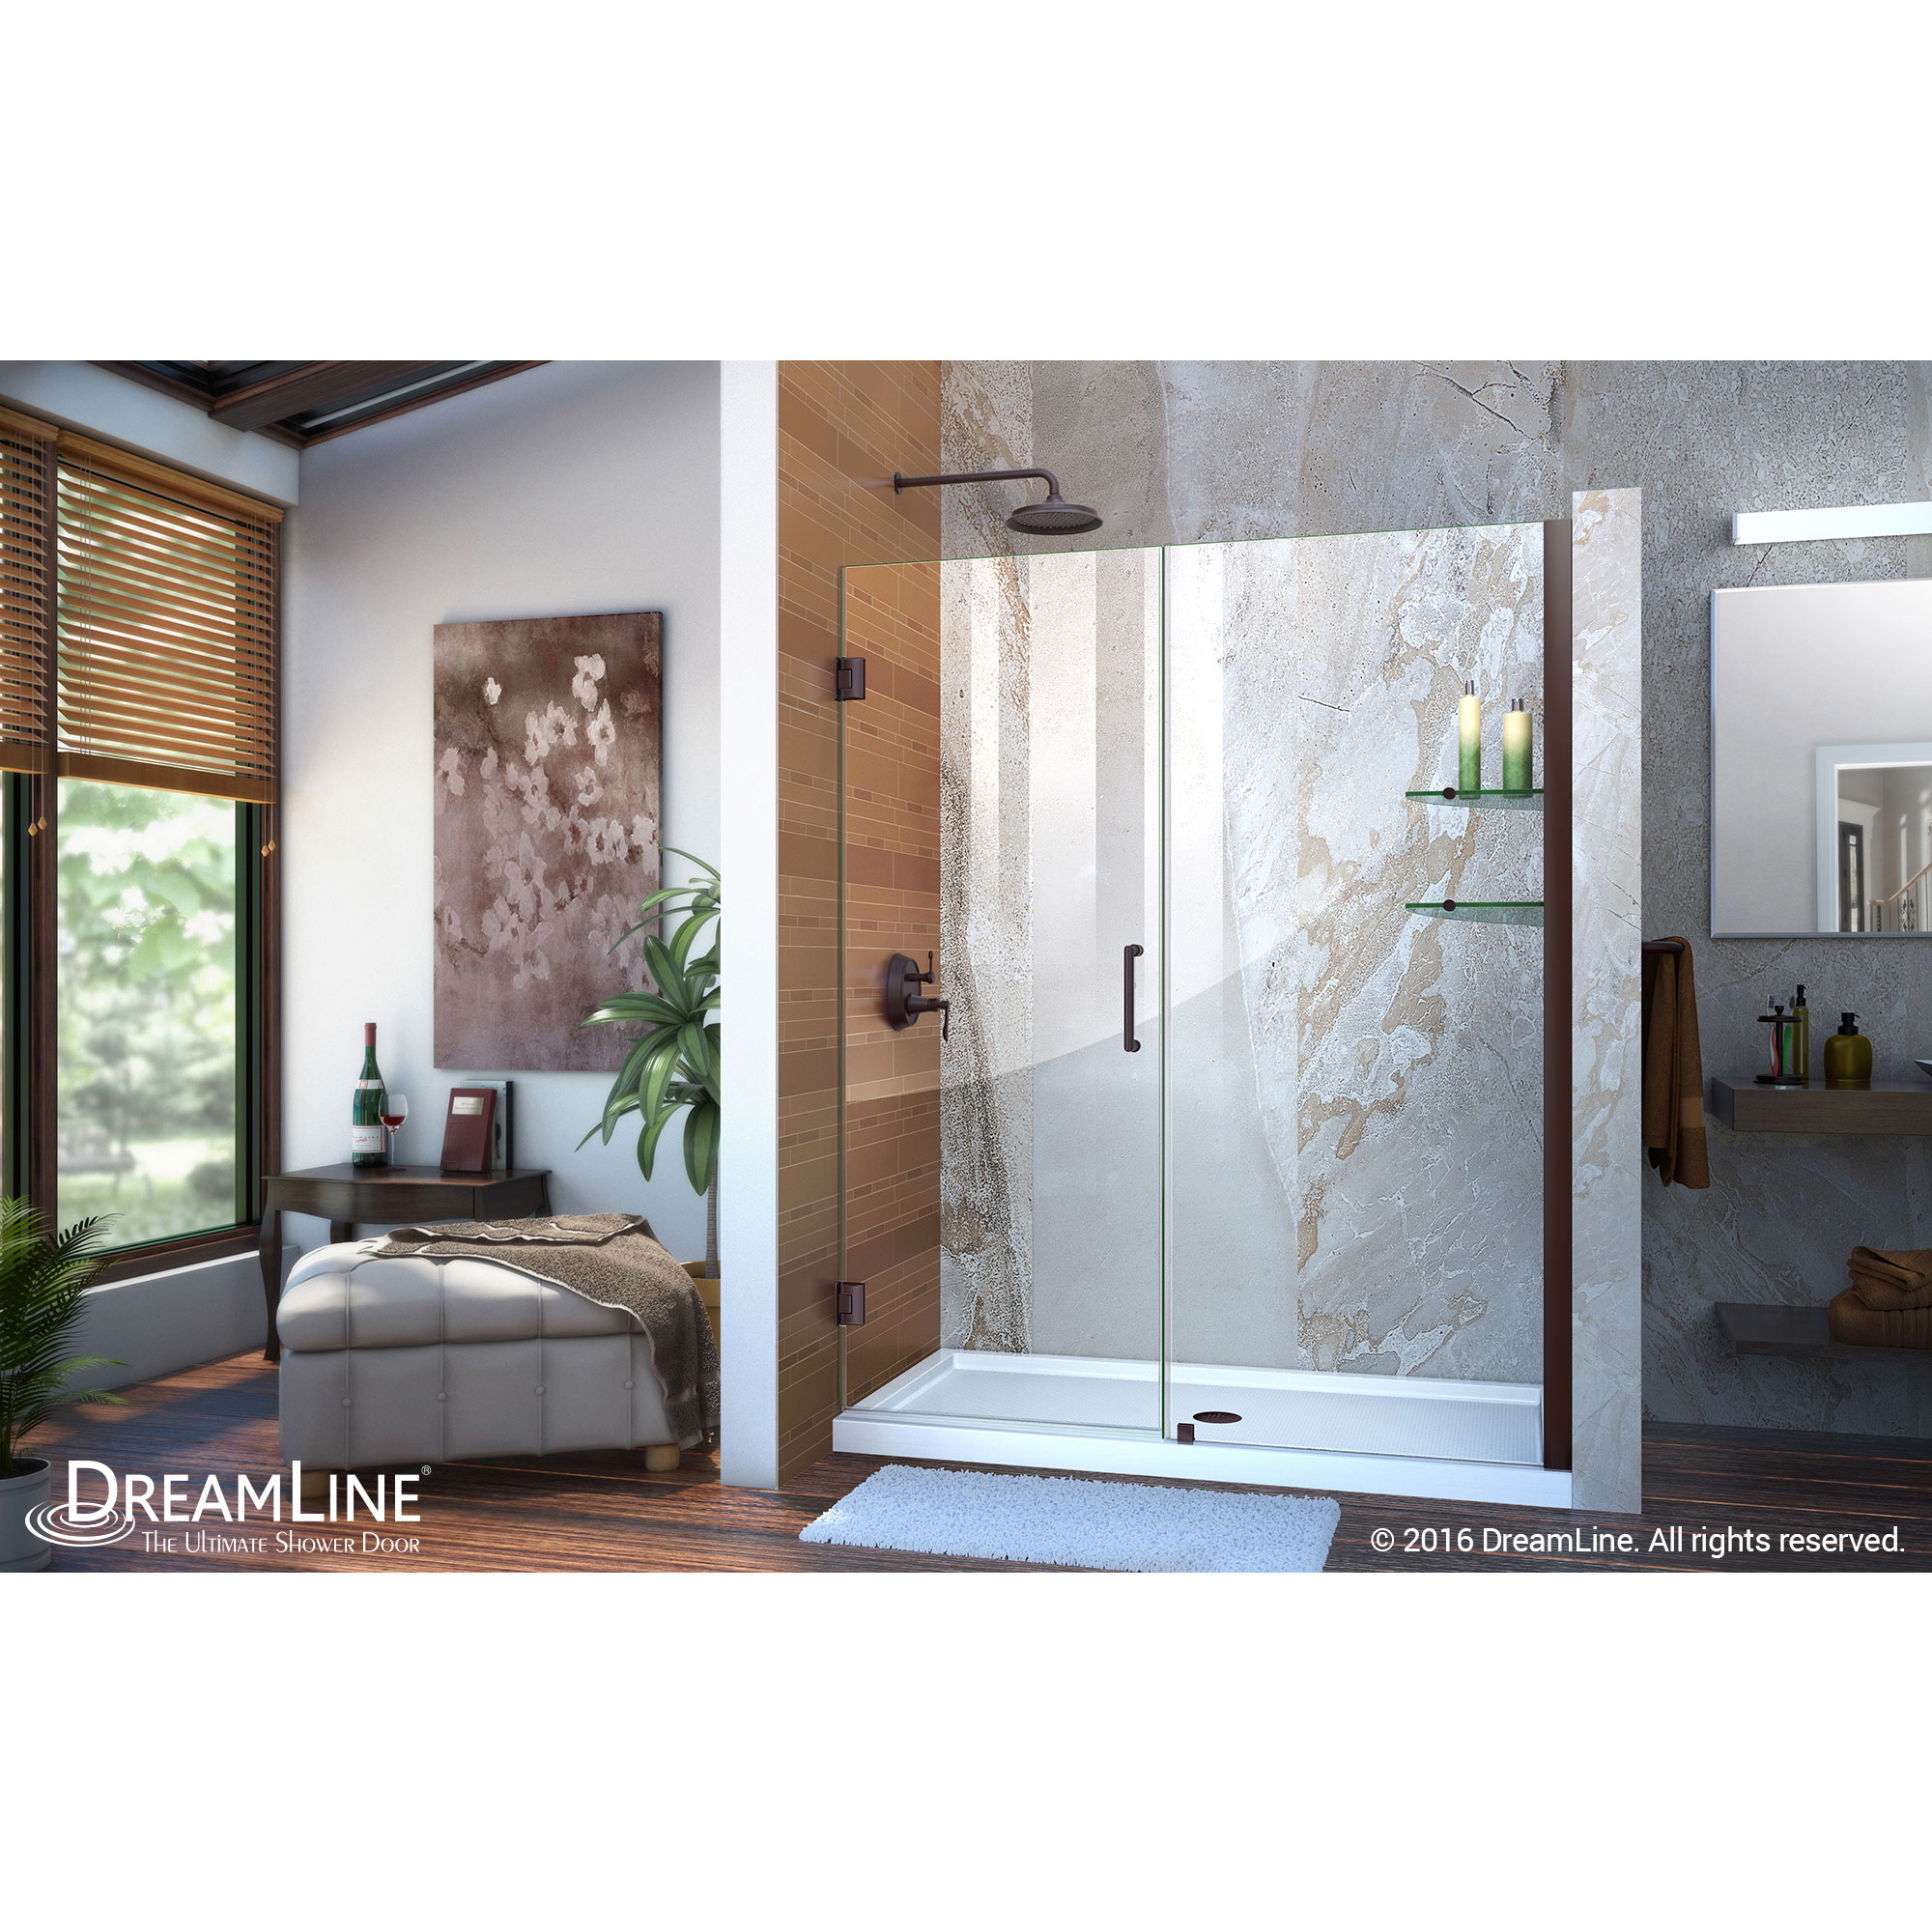 Unidoor 55 to 56" Frameless Hinged Shower Door, Clear 3/8" Glass Door, Oil Rubbed Bronze